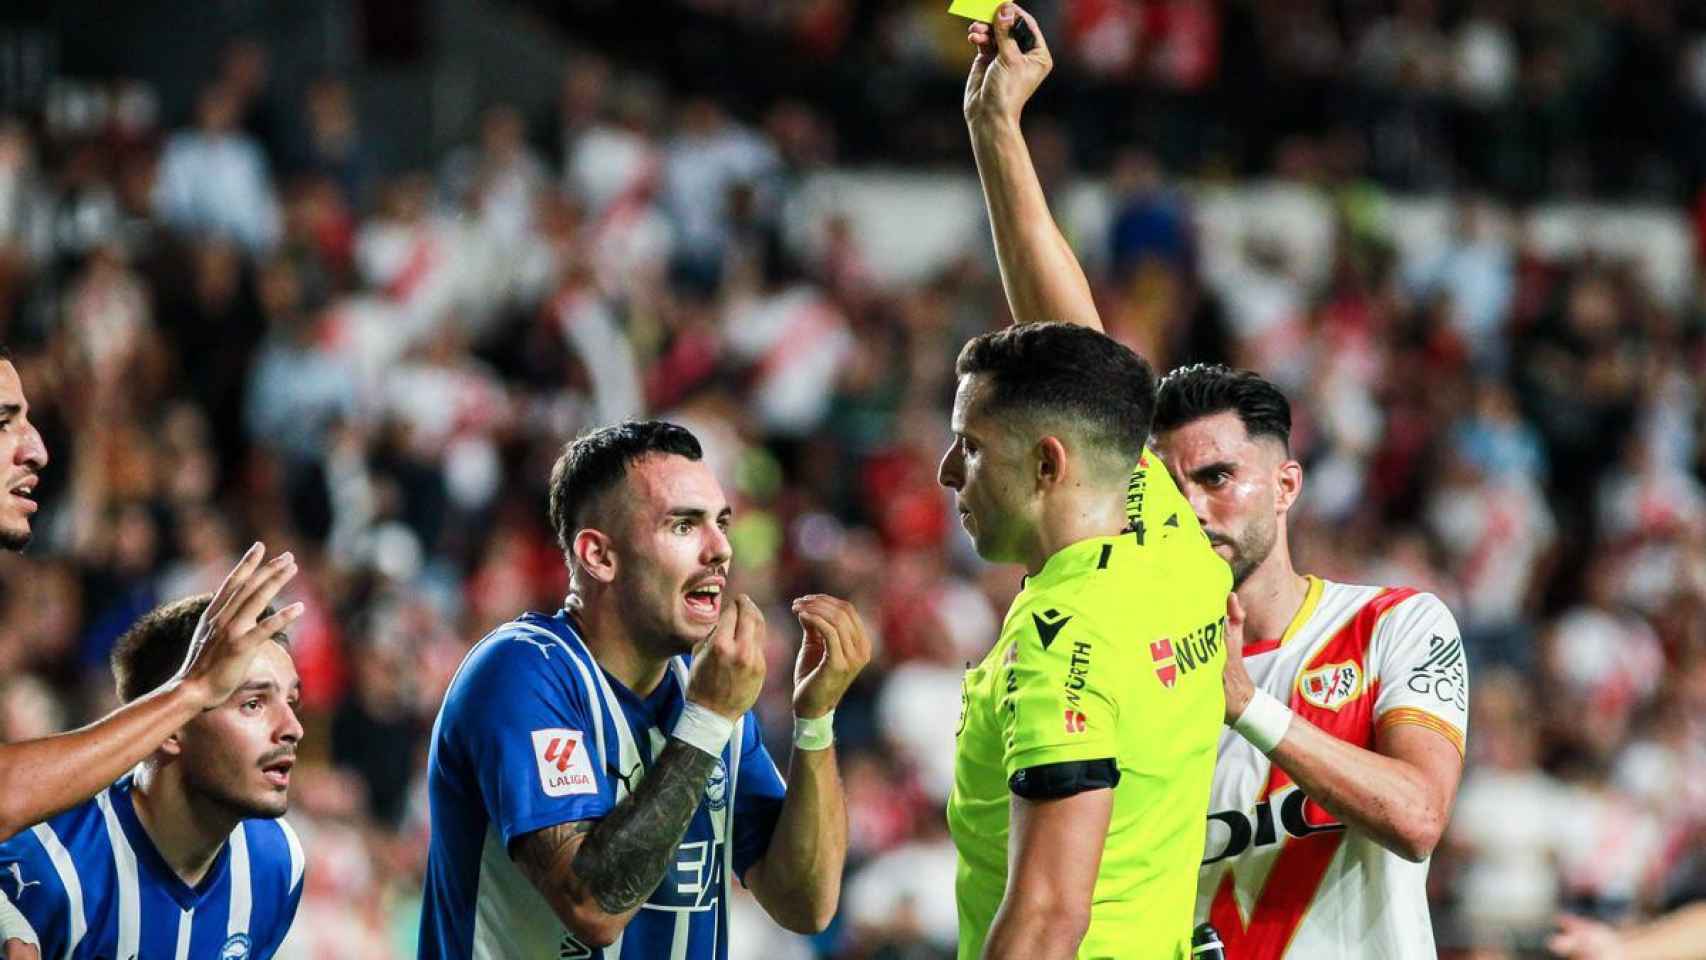 Álex Sola, del Alavés, ve una cartulina amarilla esta temporada ante el Rayo Vallecano.